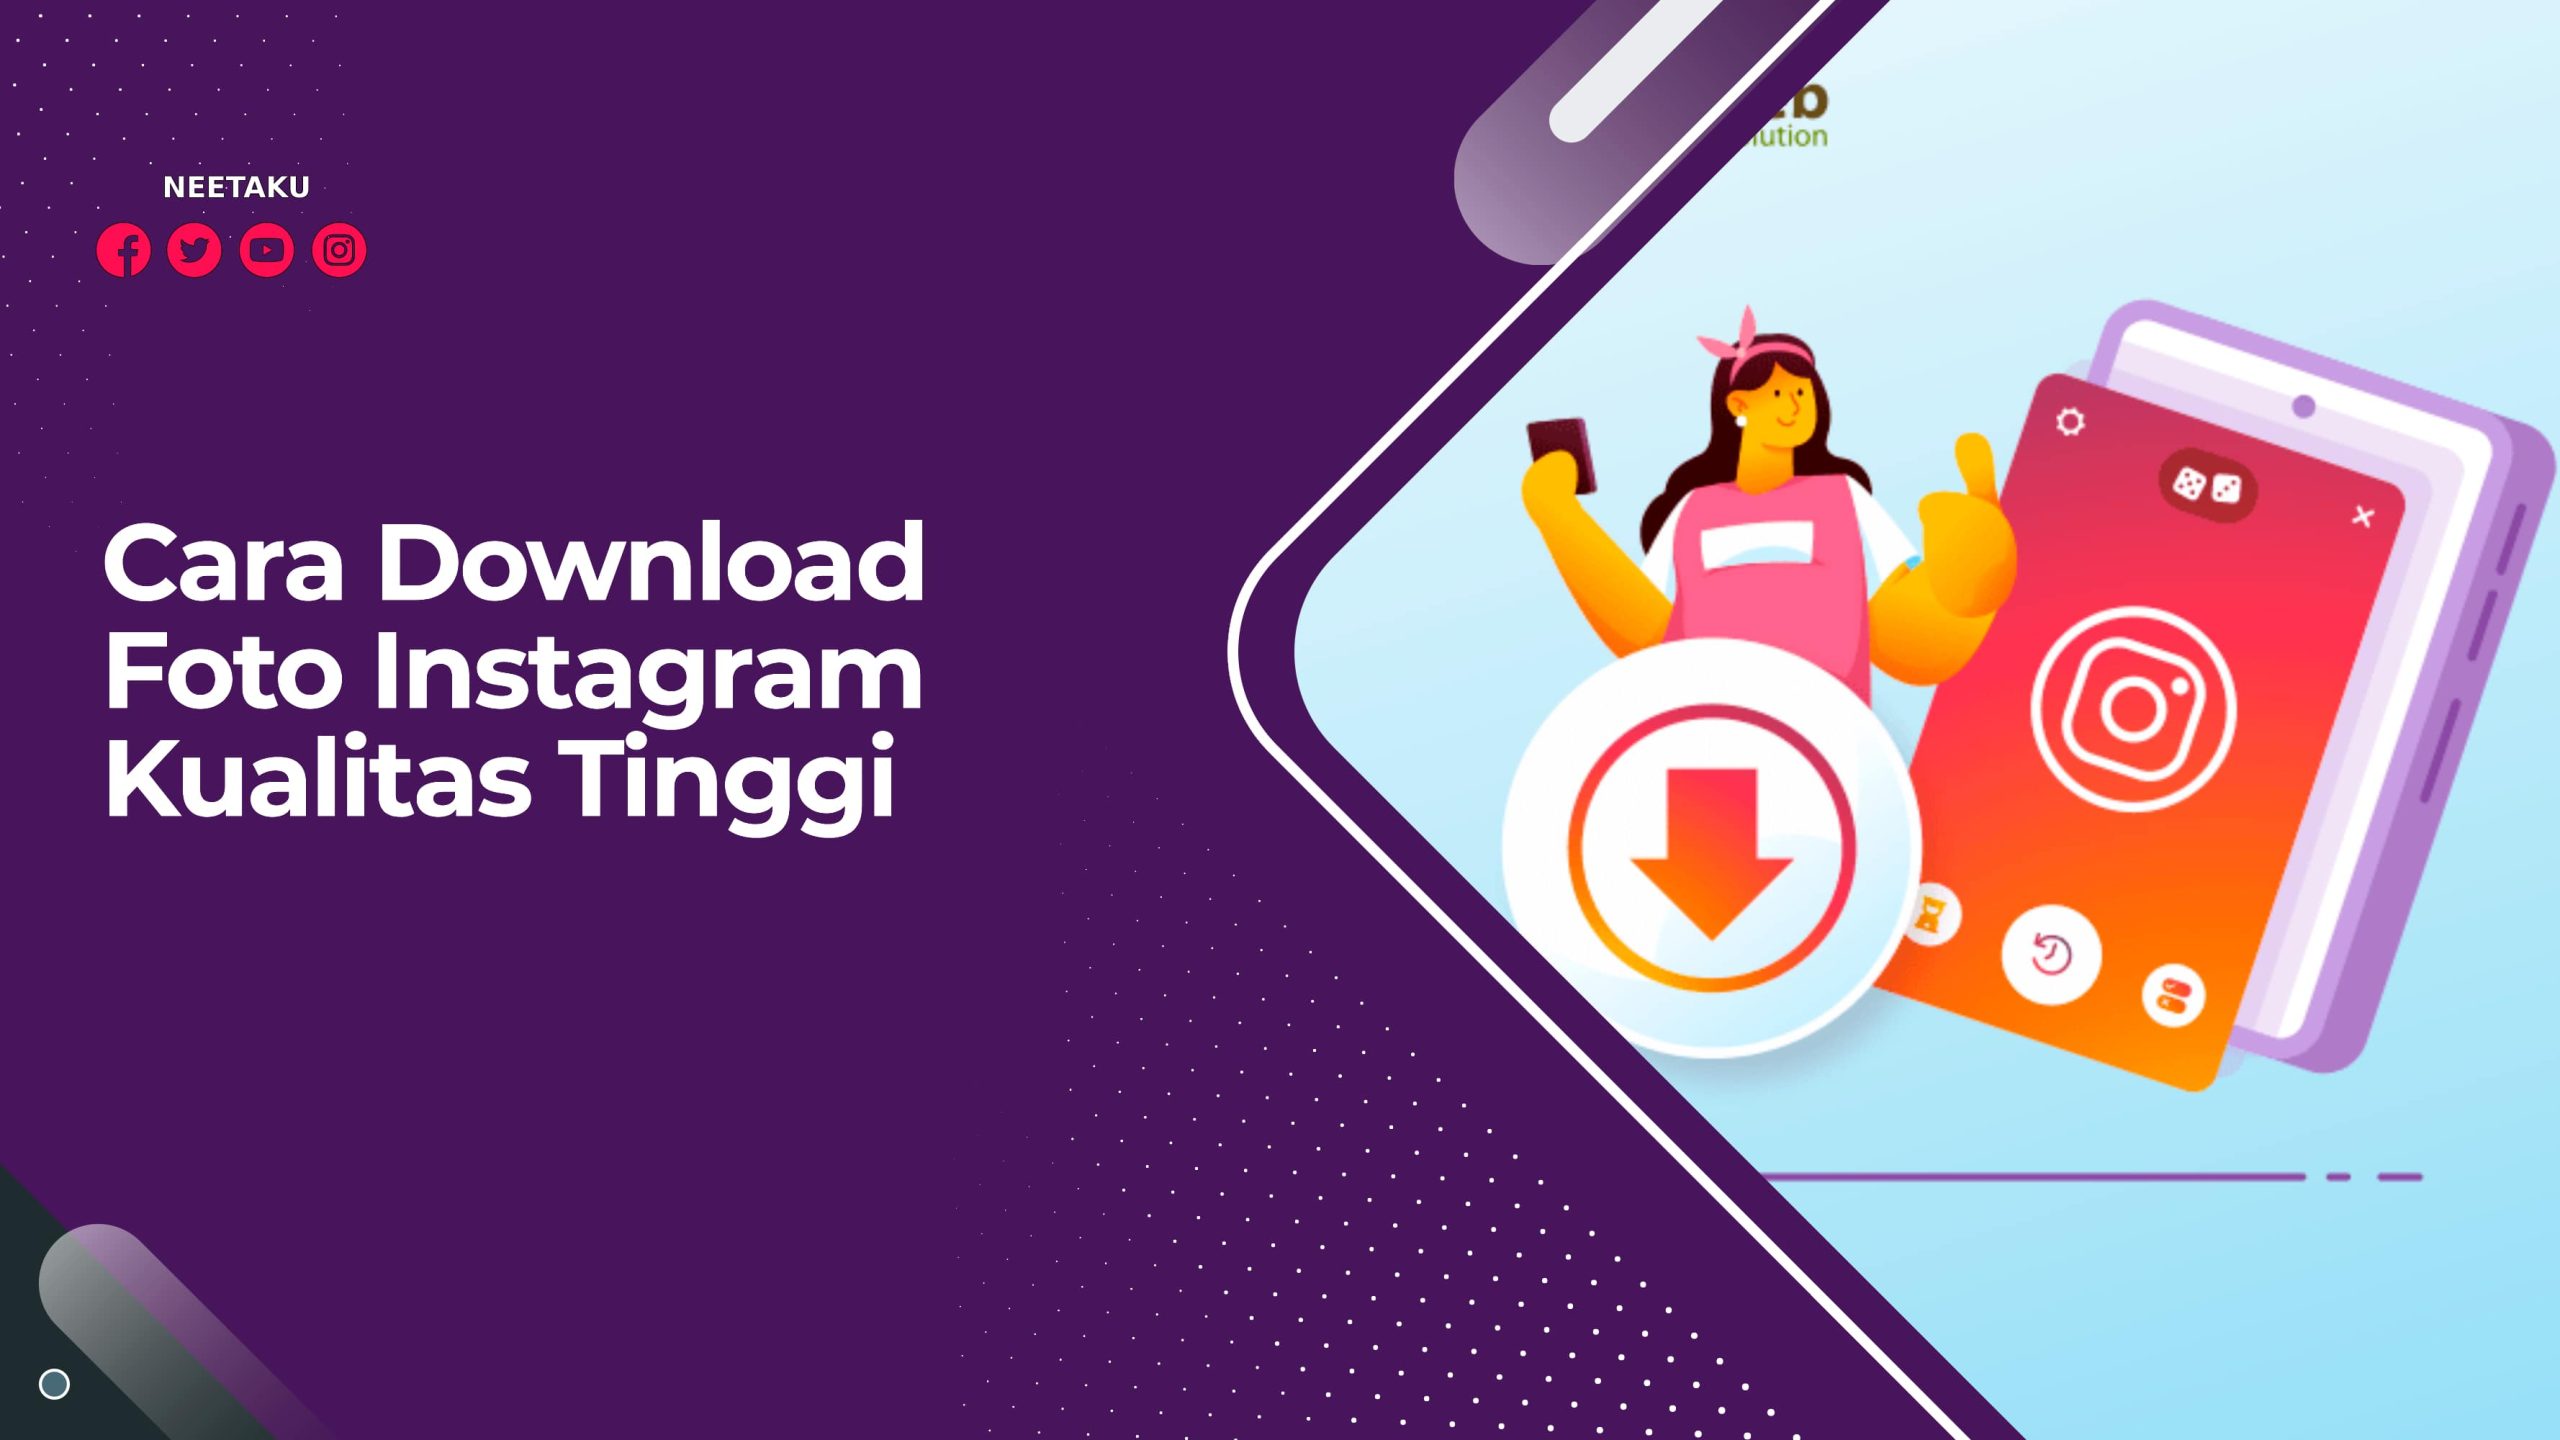 Cara Download Foto Instagram Kualitas Tinggi